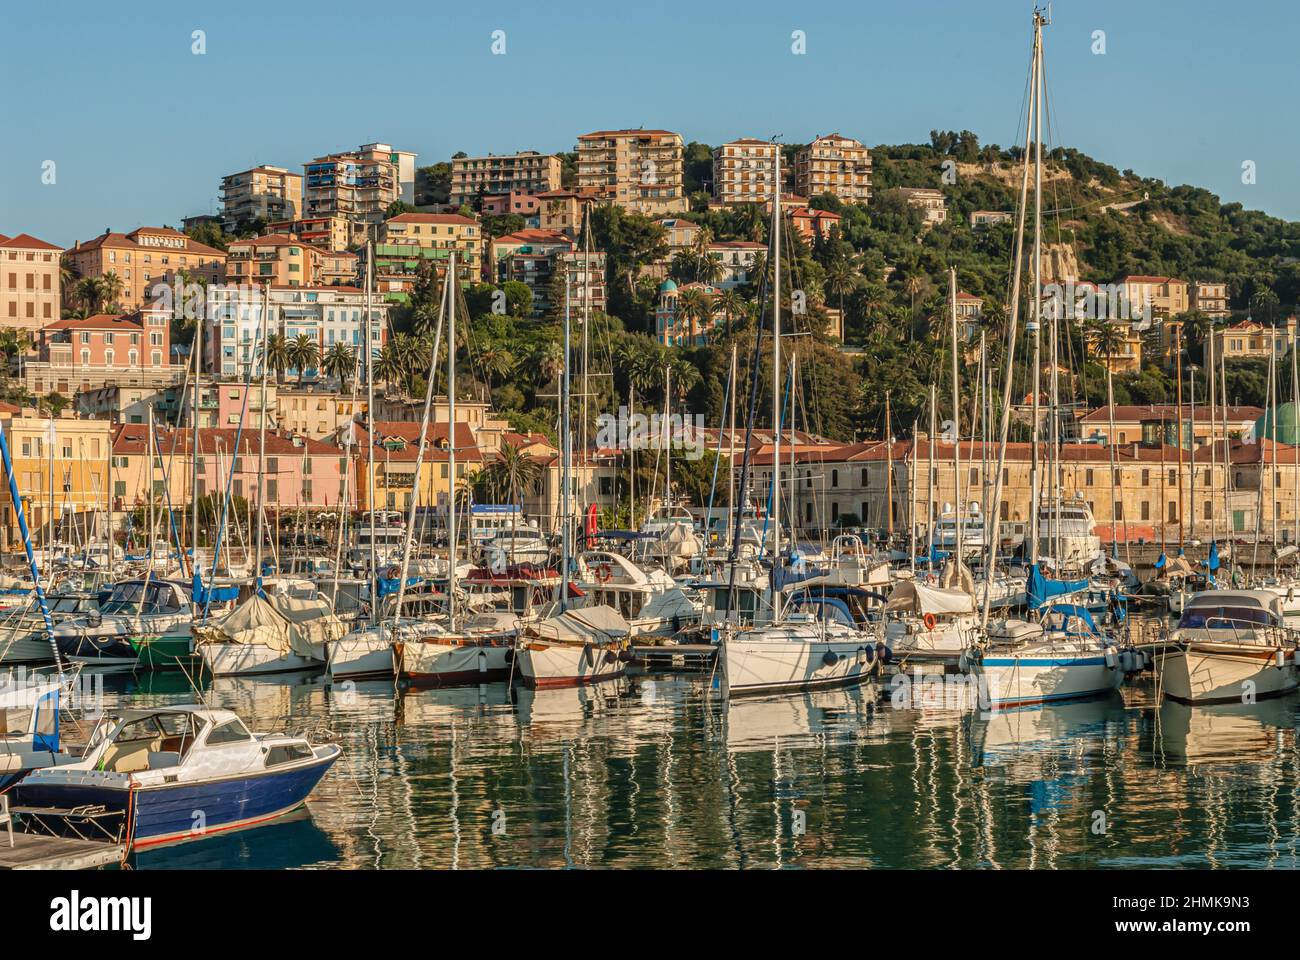 Vista sul porto turistico di Imperia presso la costa ligure, a nord-ovest dell'Italia. Foto Stock